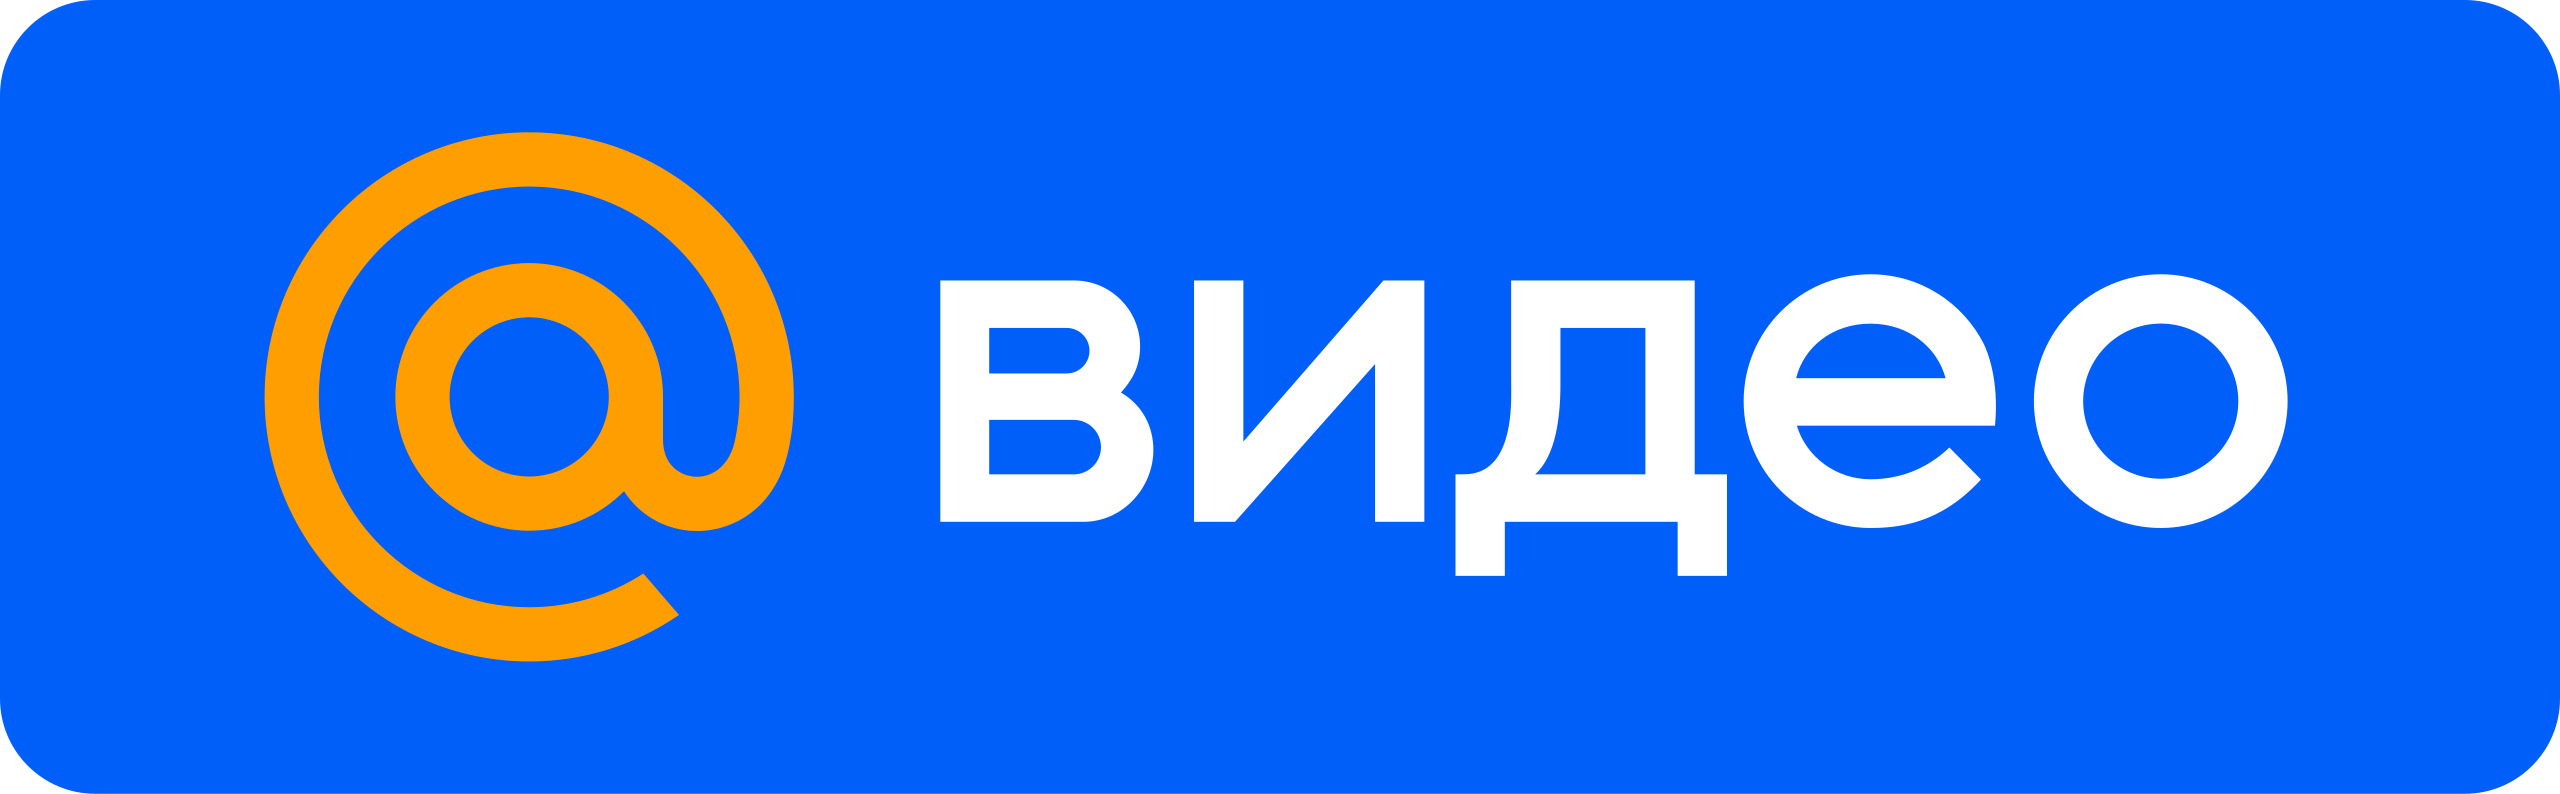 Mi mail ru. Майл ру. Видео mail.ru. Mail.ru логотип. Логотип почты мейл.